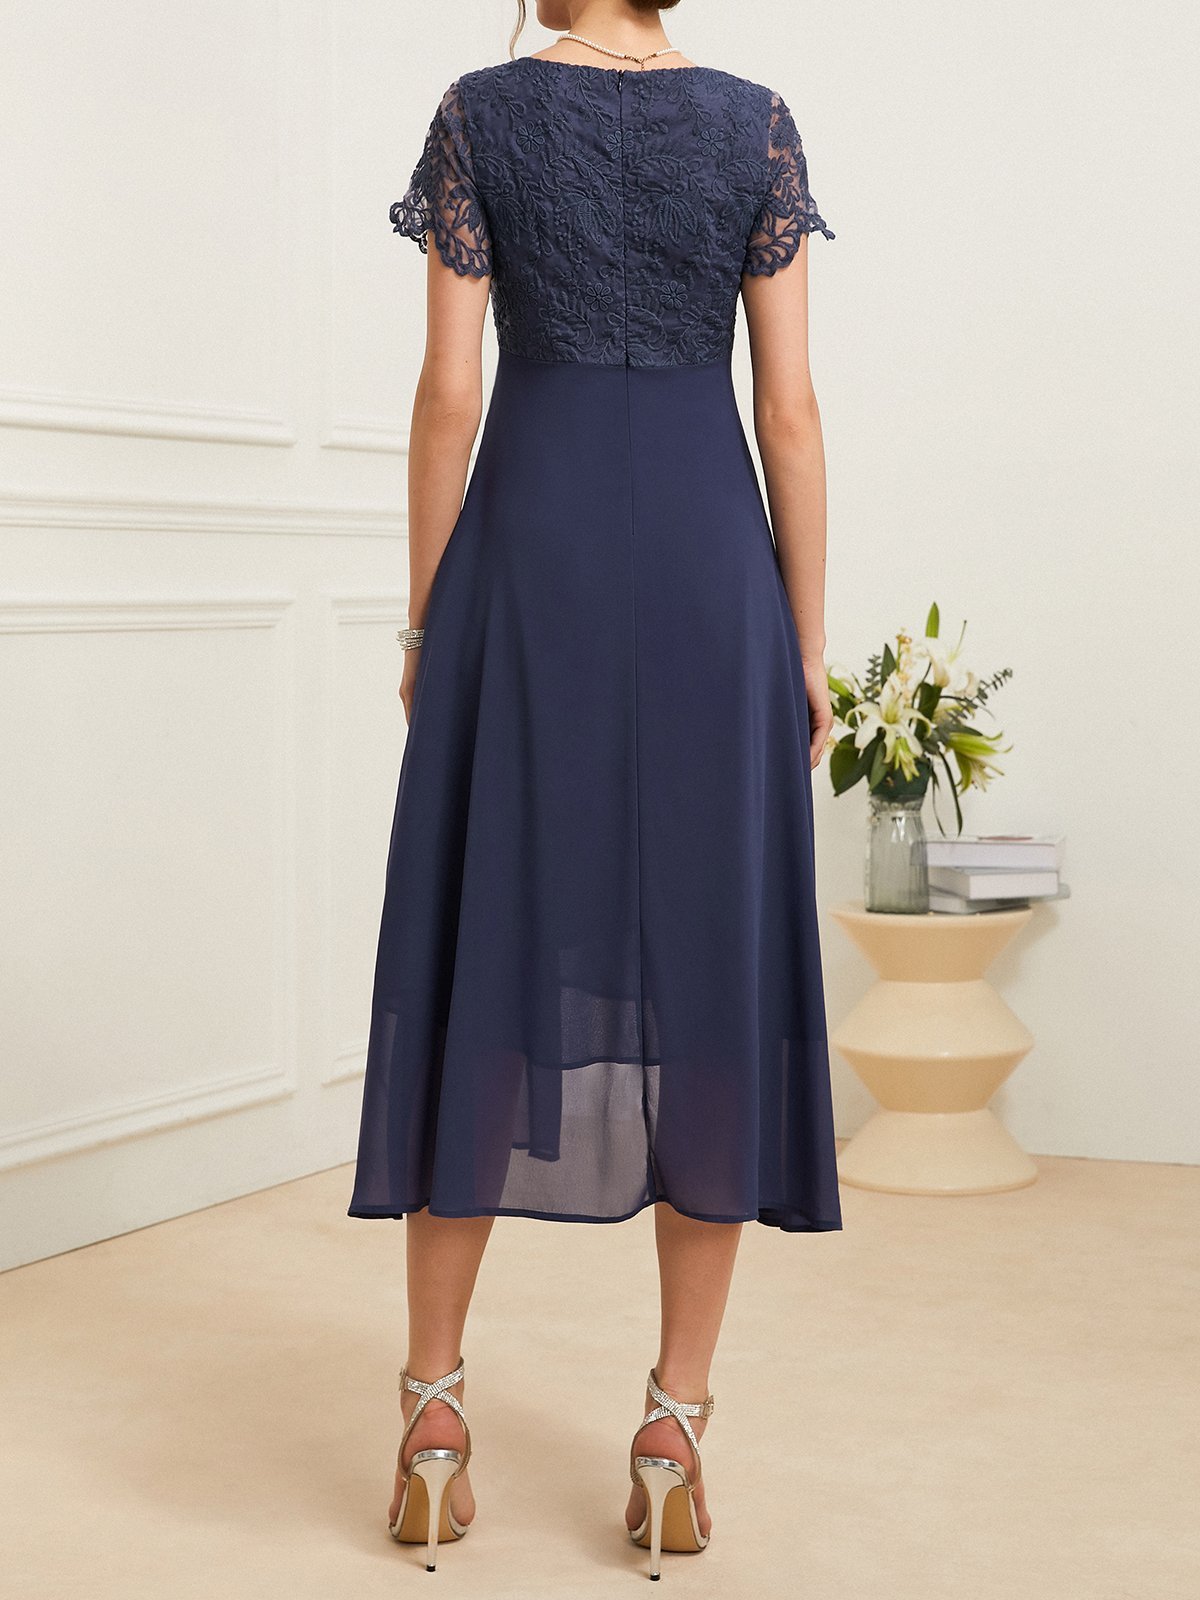 Lace Elegant Plain Dress